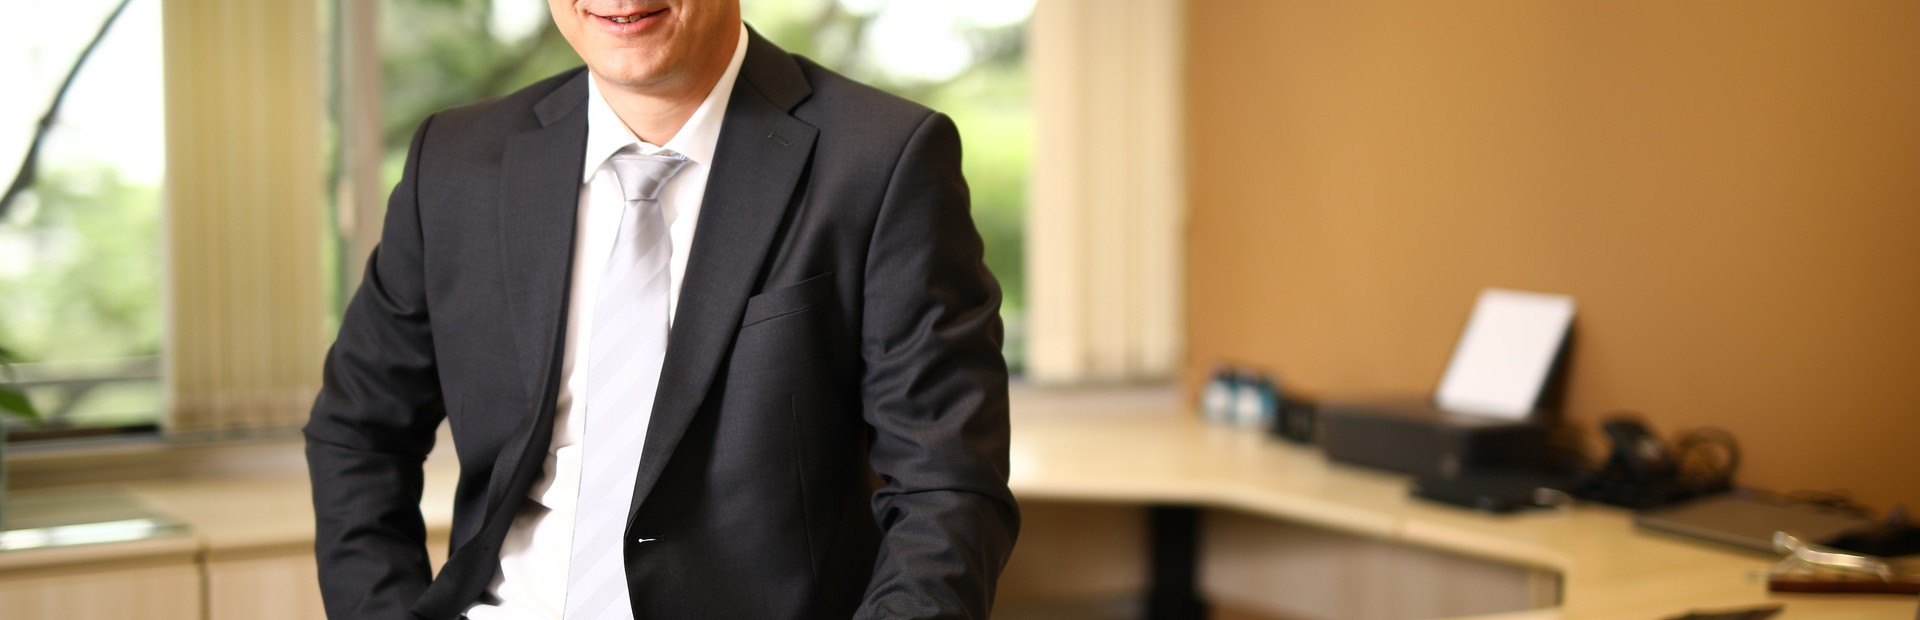 Jens Franke jmenován novým finančním ředitelem společnosti Siemens Česká republika 